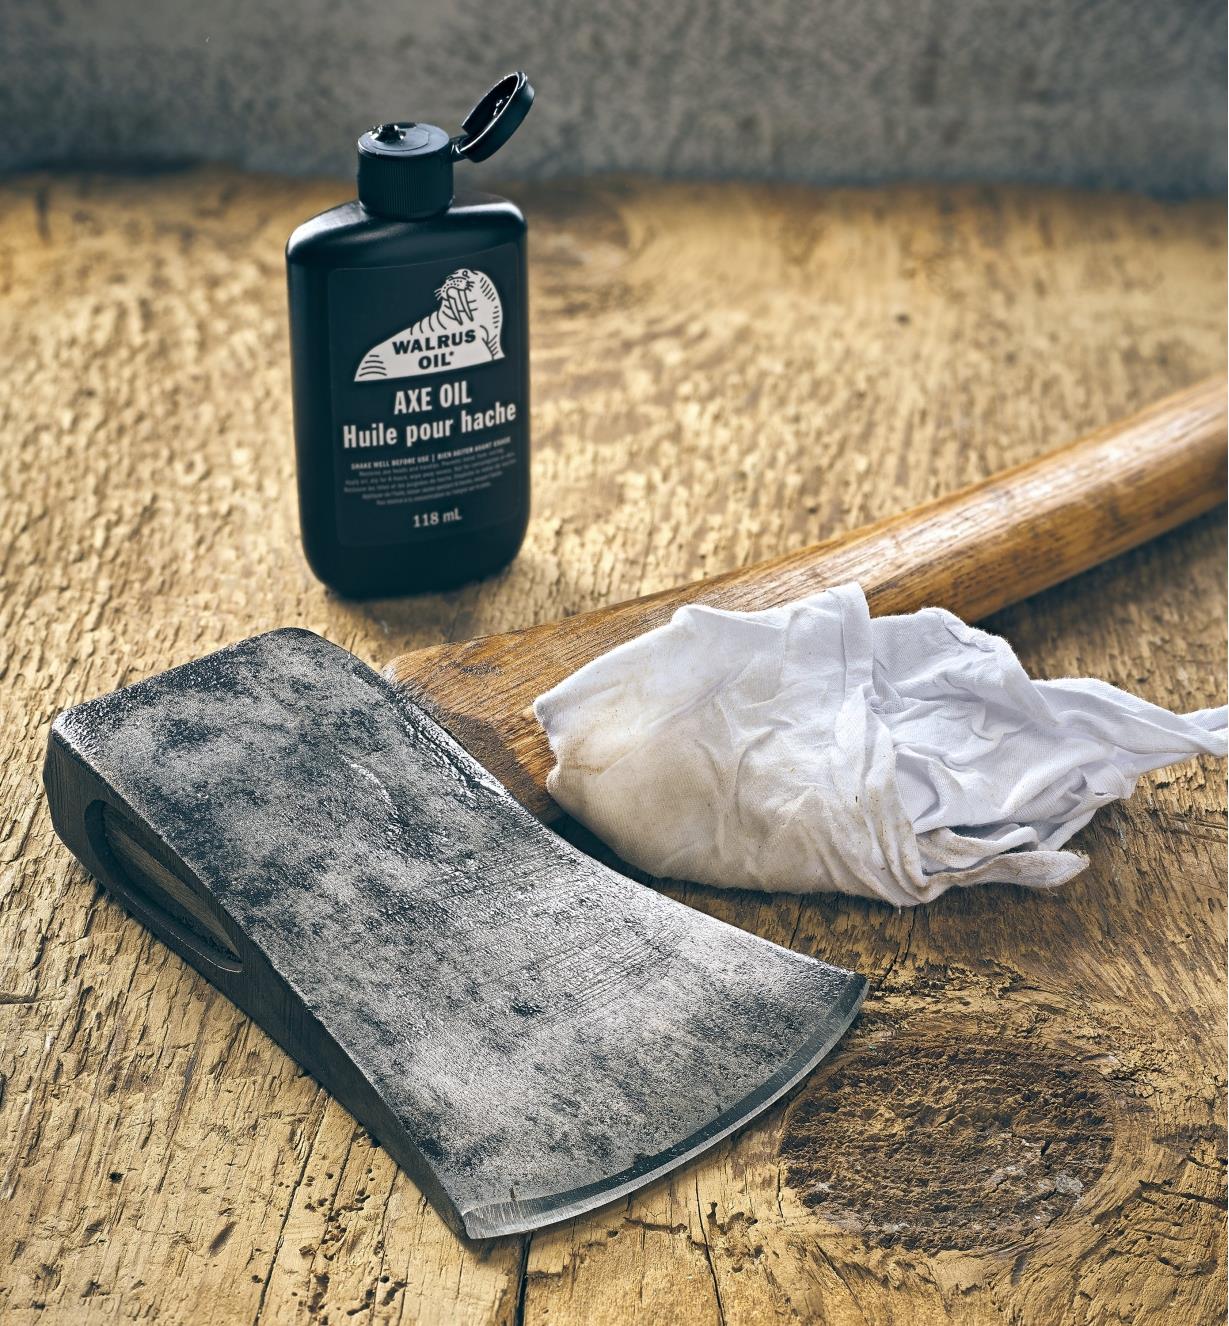 An axe treated with Walrus Oil axe oil